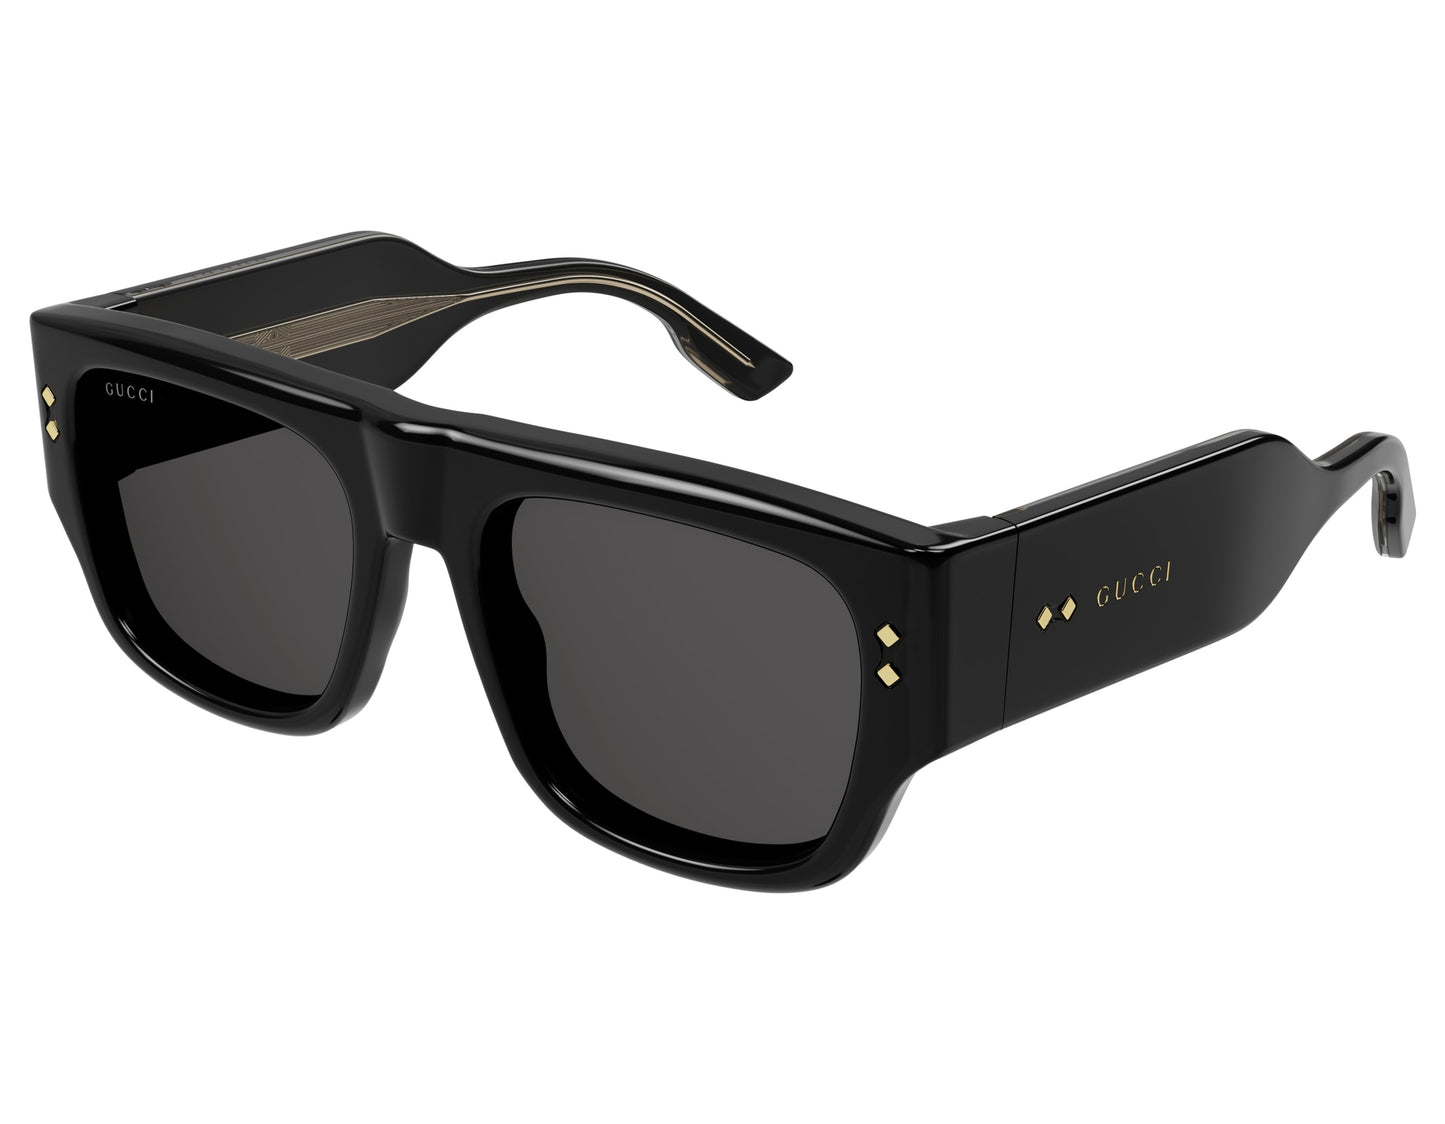 Gucci GG1262S-001-54 54mm New Sunglasses